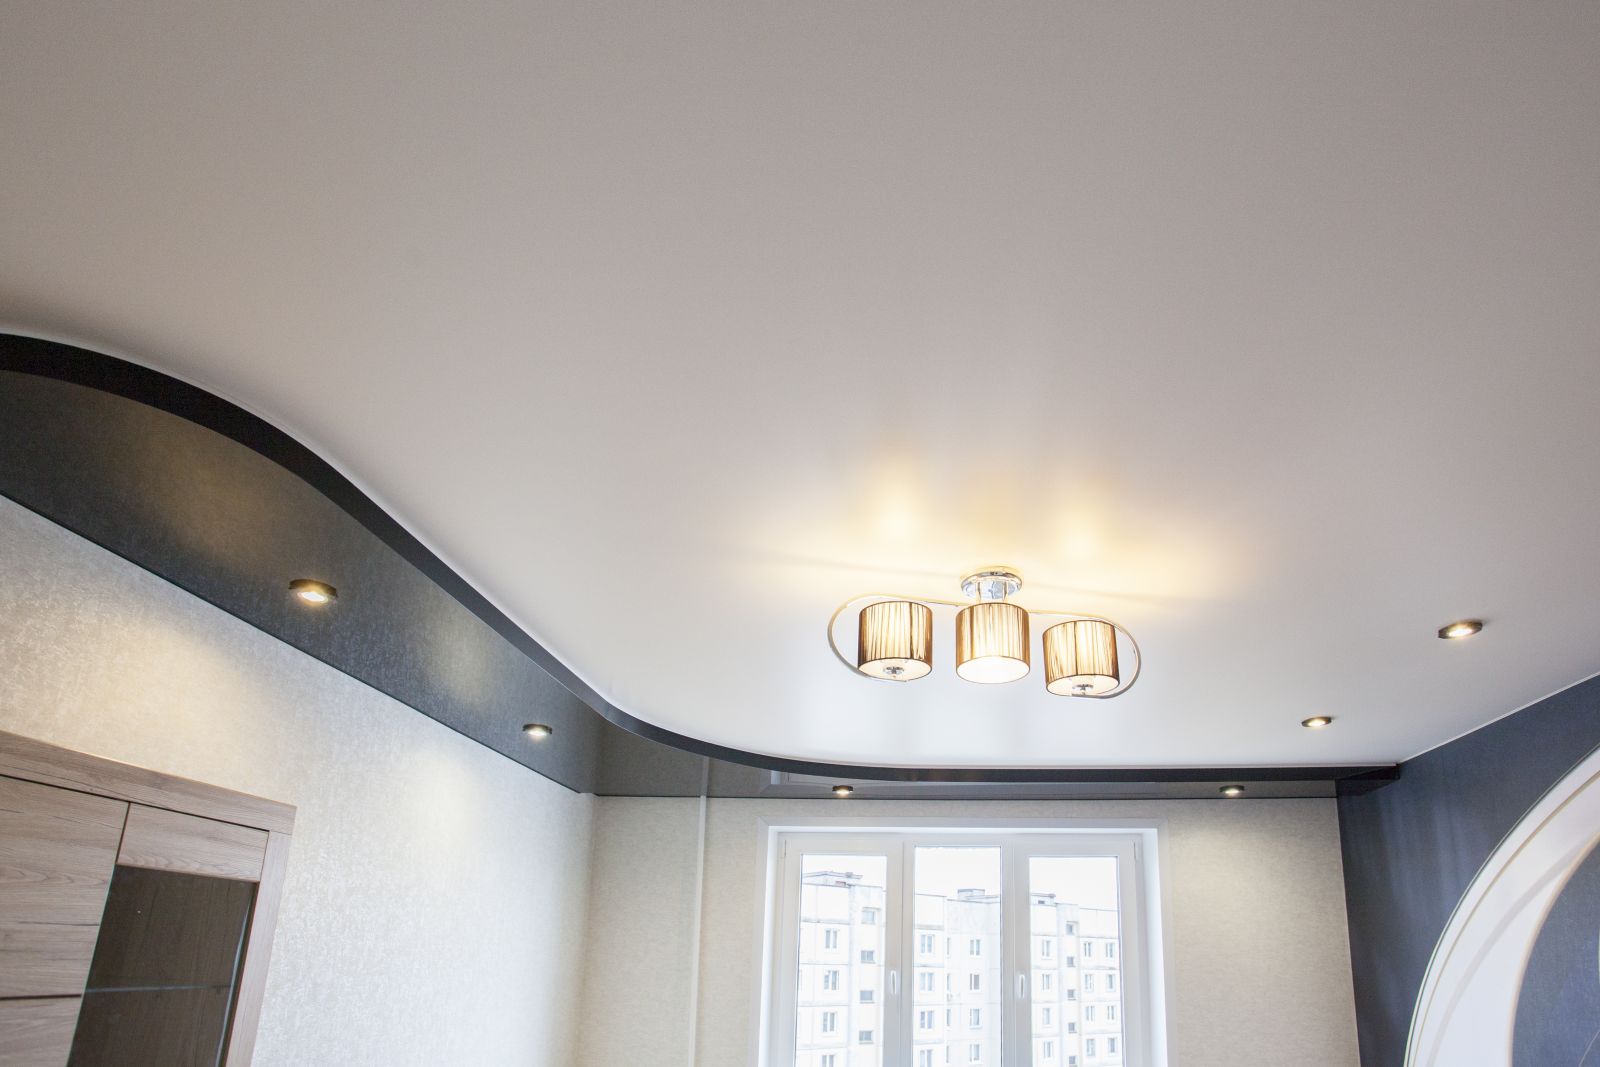 Двухуровневый потолок без подсветки, нижний уровень выполнен в материале черный глянец, верхний уровень - белый матовый материал